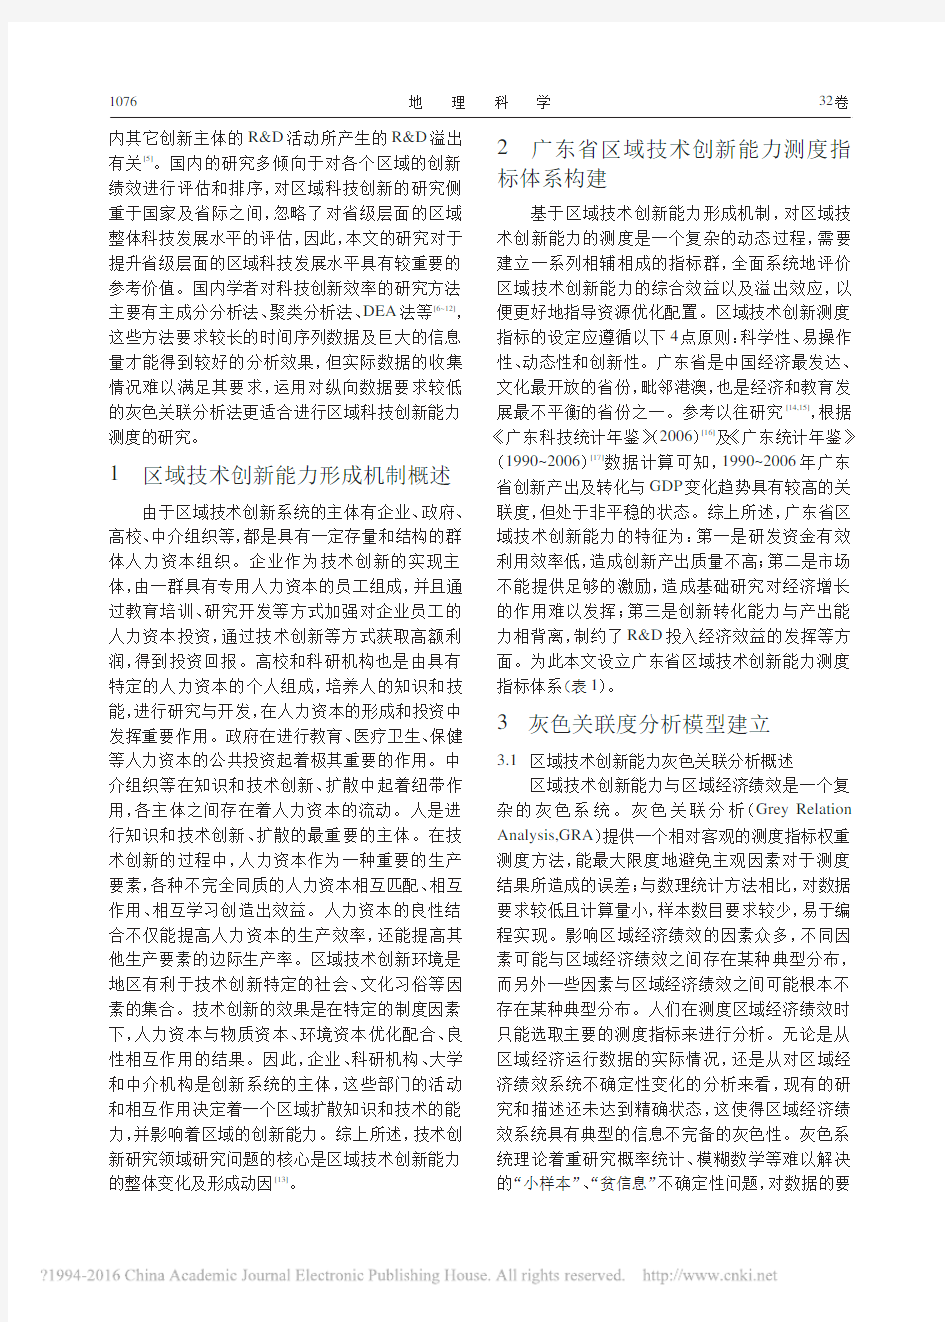 广东省区域技术创新能力测度的灰色关联分析_徐辉